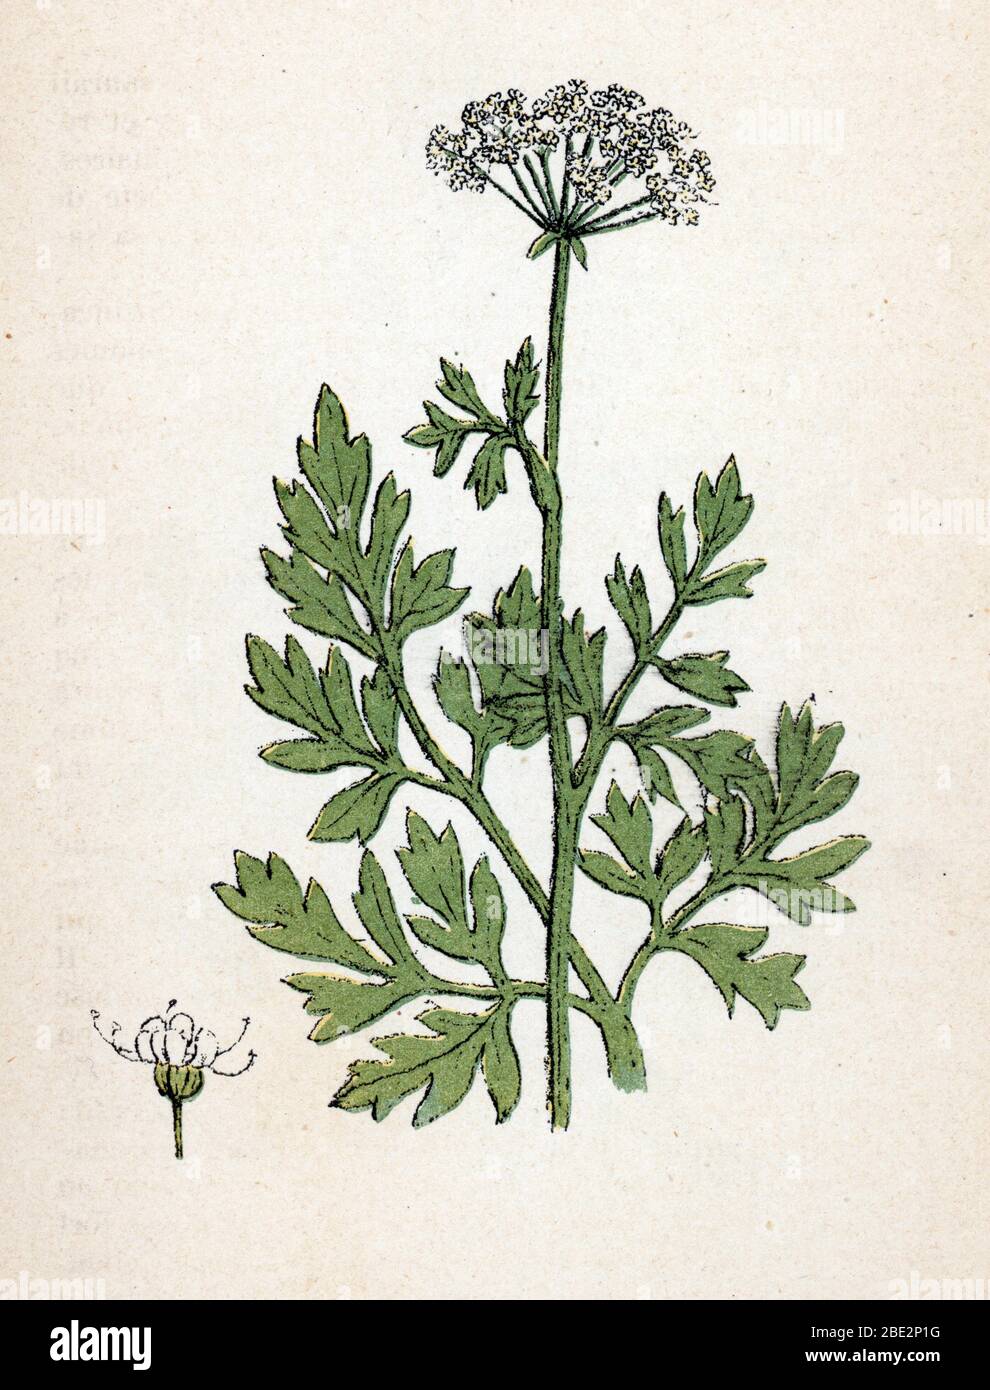 'Persil' (Petroselinum sativum) (garden parsley) Planche de botanique tiree de 'Atlas colorie des plantes medicinales' de Paul Hariot, 1900 (Botanical Stock Photo